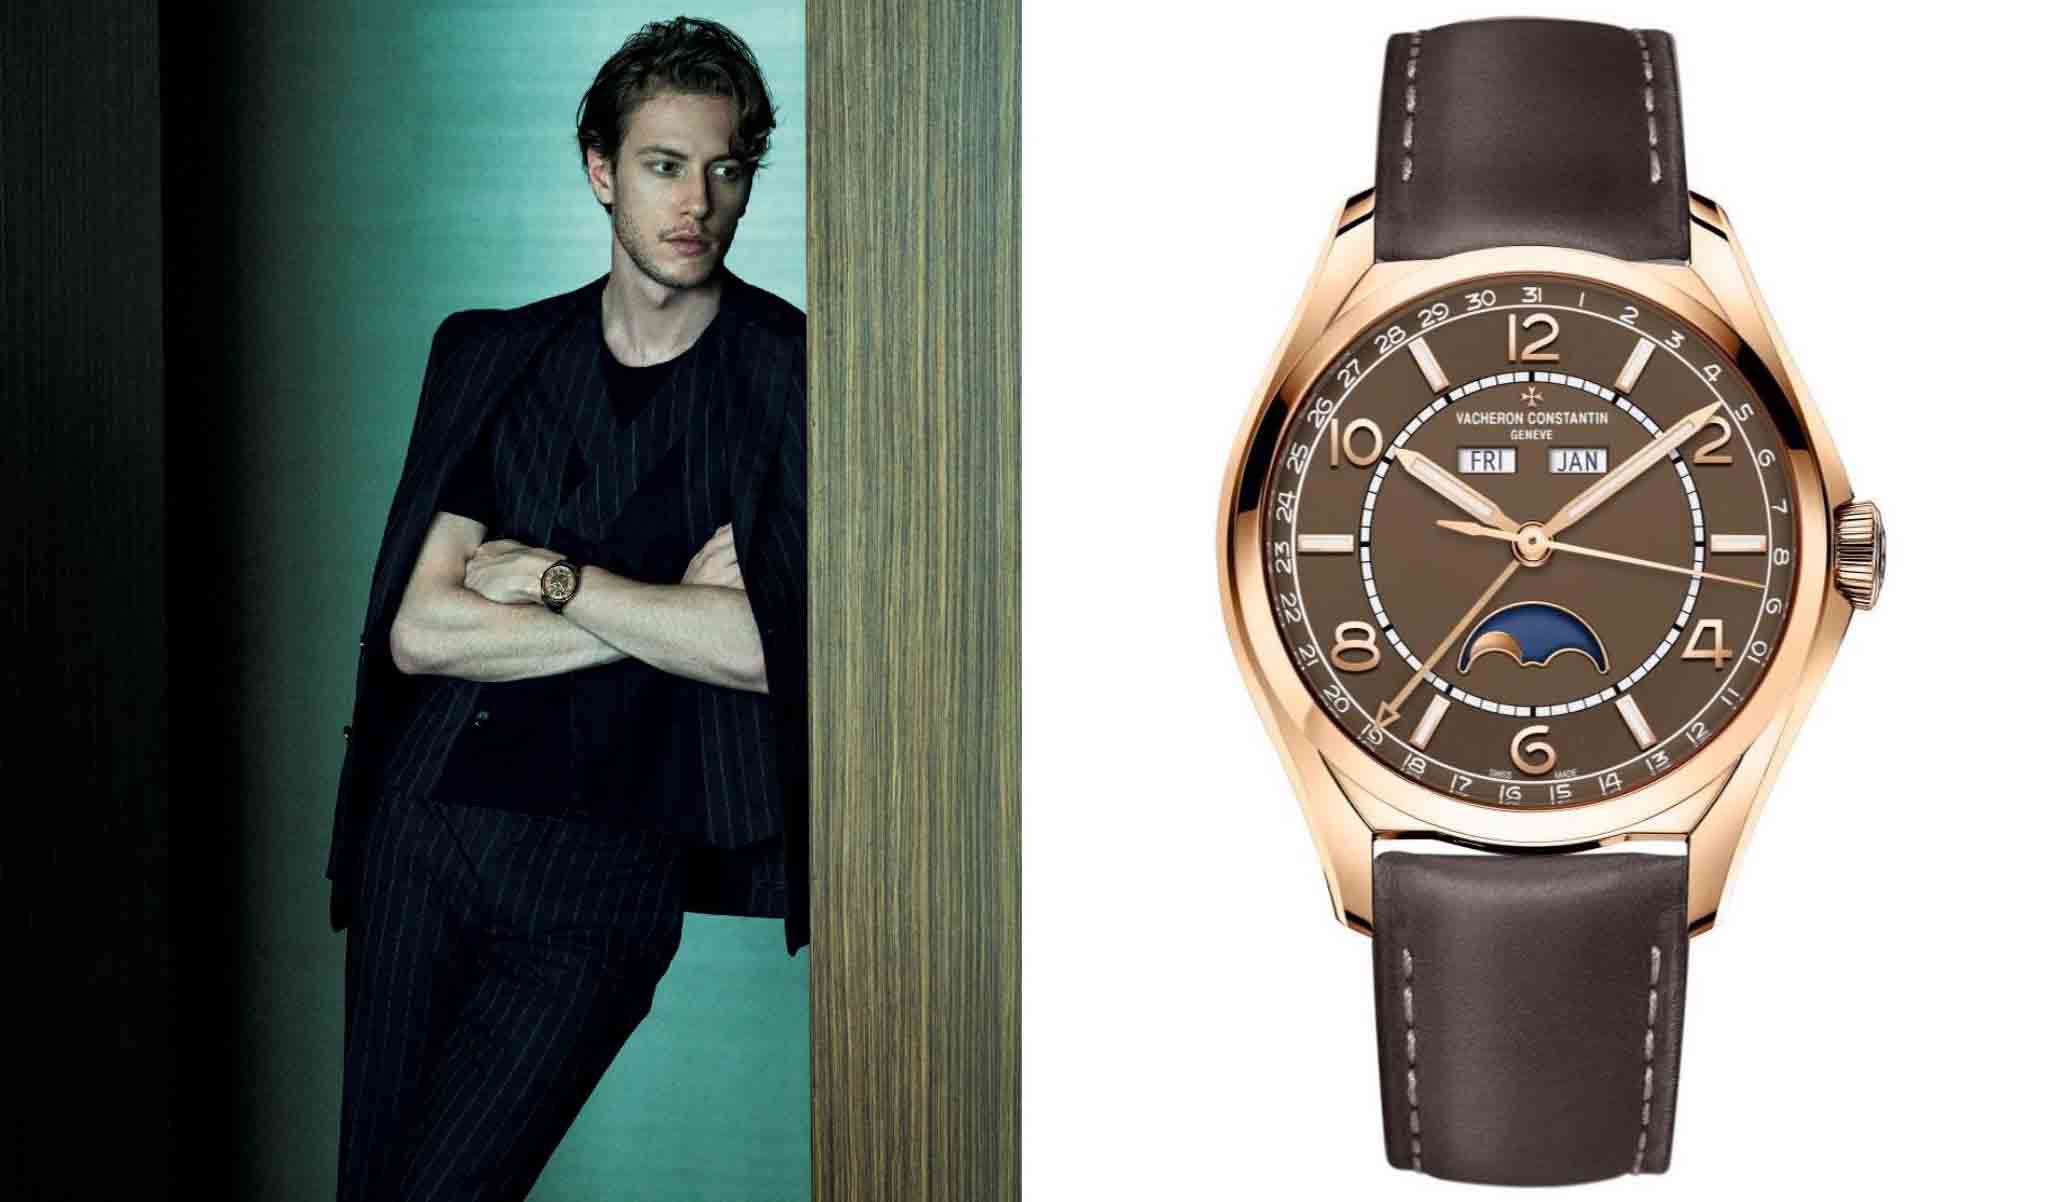 右はヴァシュロン・コンスタンタンの腕時計、『フィフティーシックス・コンプリートカレンダー』。左はそれを着けているモデル。